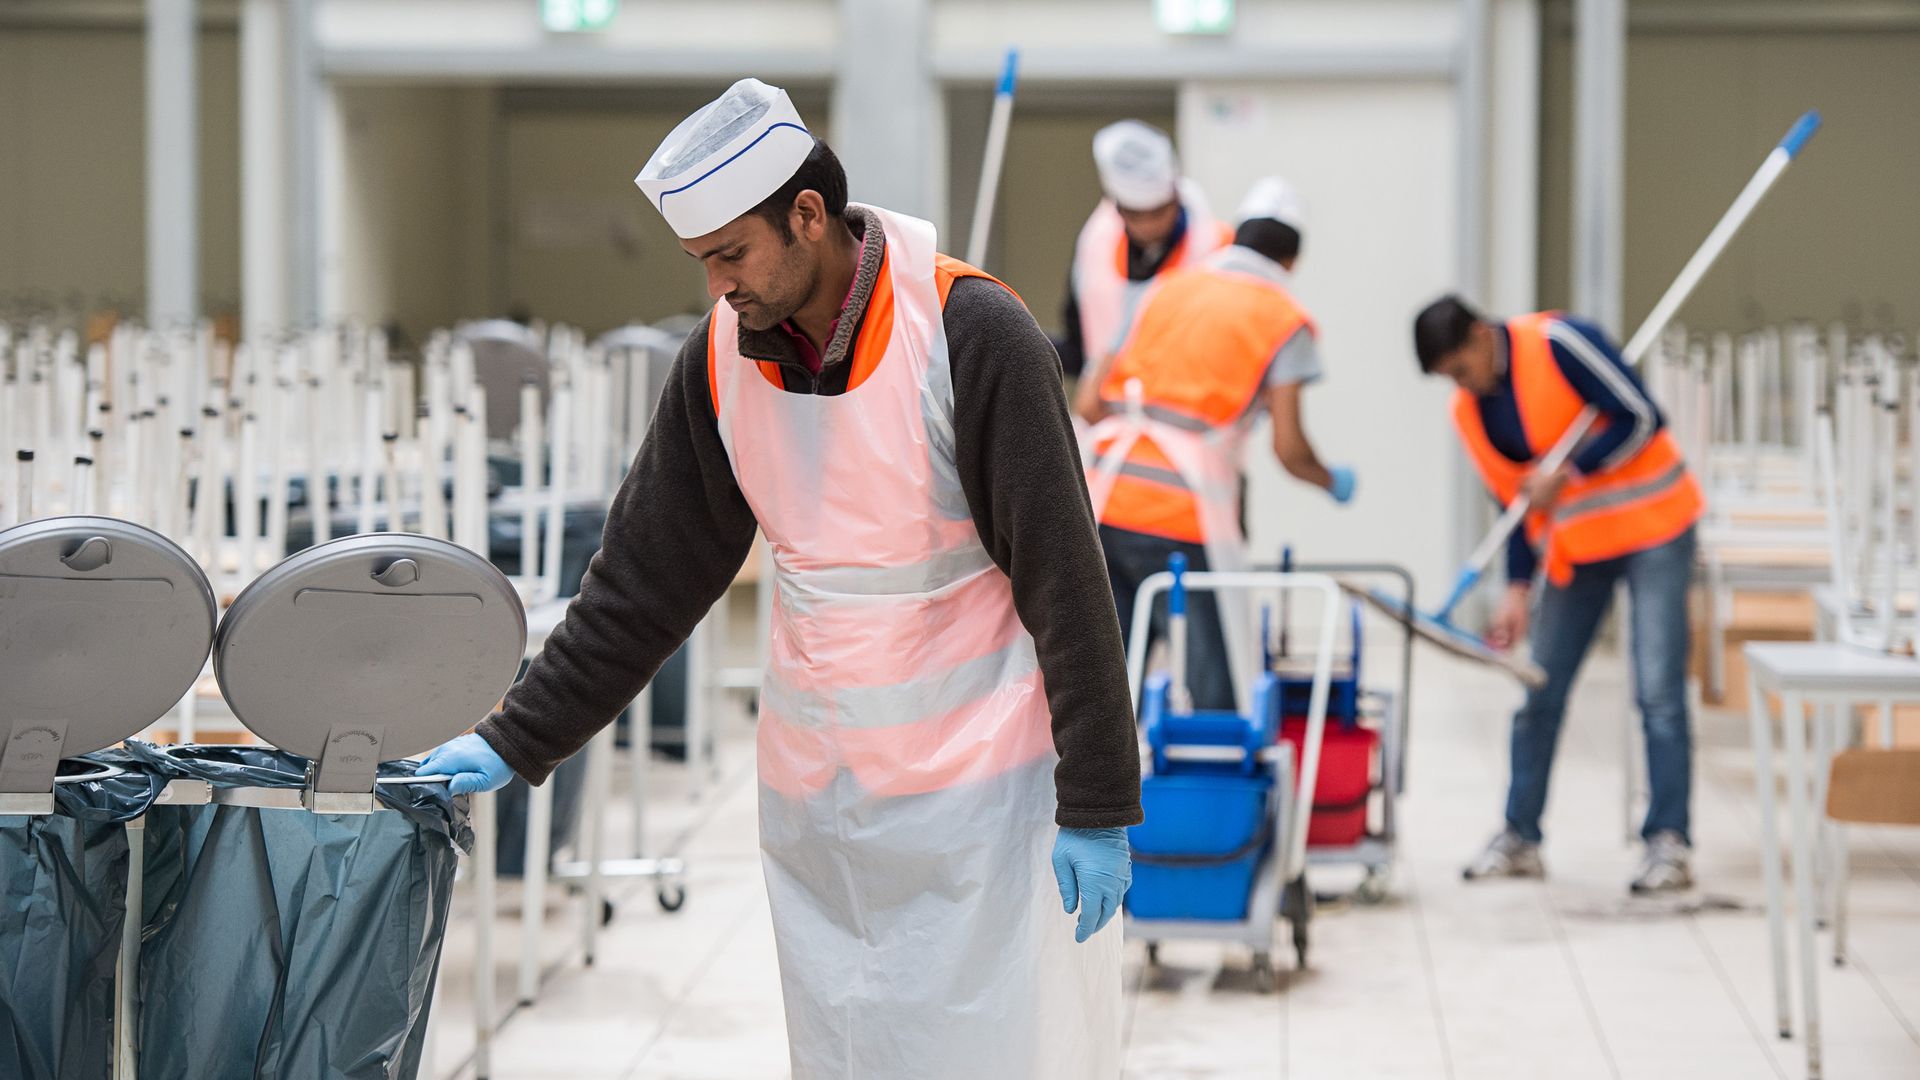 asyl: landkreistag möchte alle geflüchteten zur arbeit verpflichten